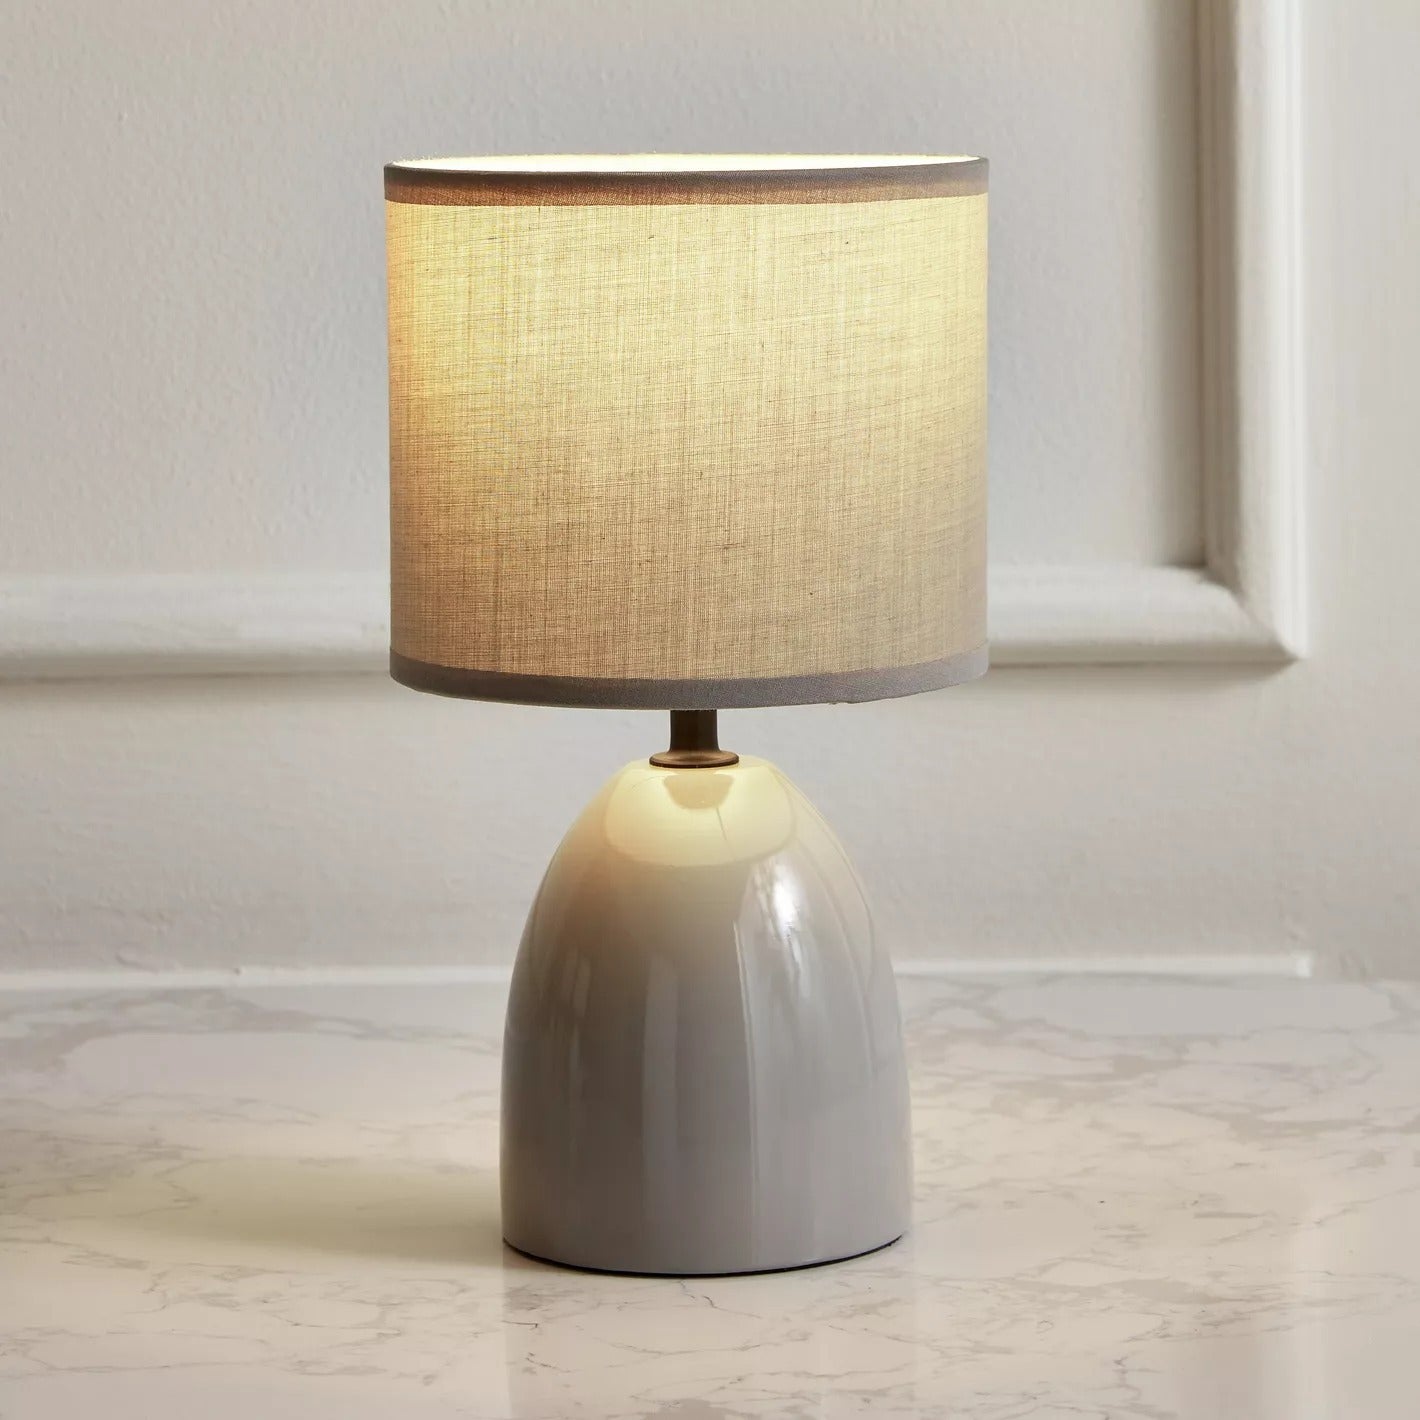 Ceramic Table Lamp - Grey